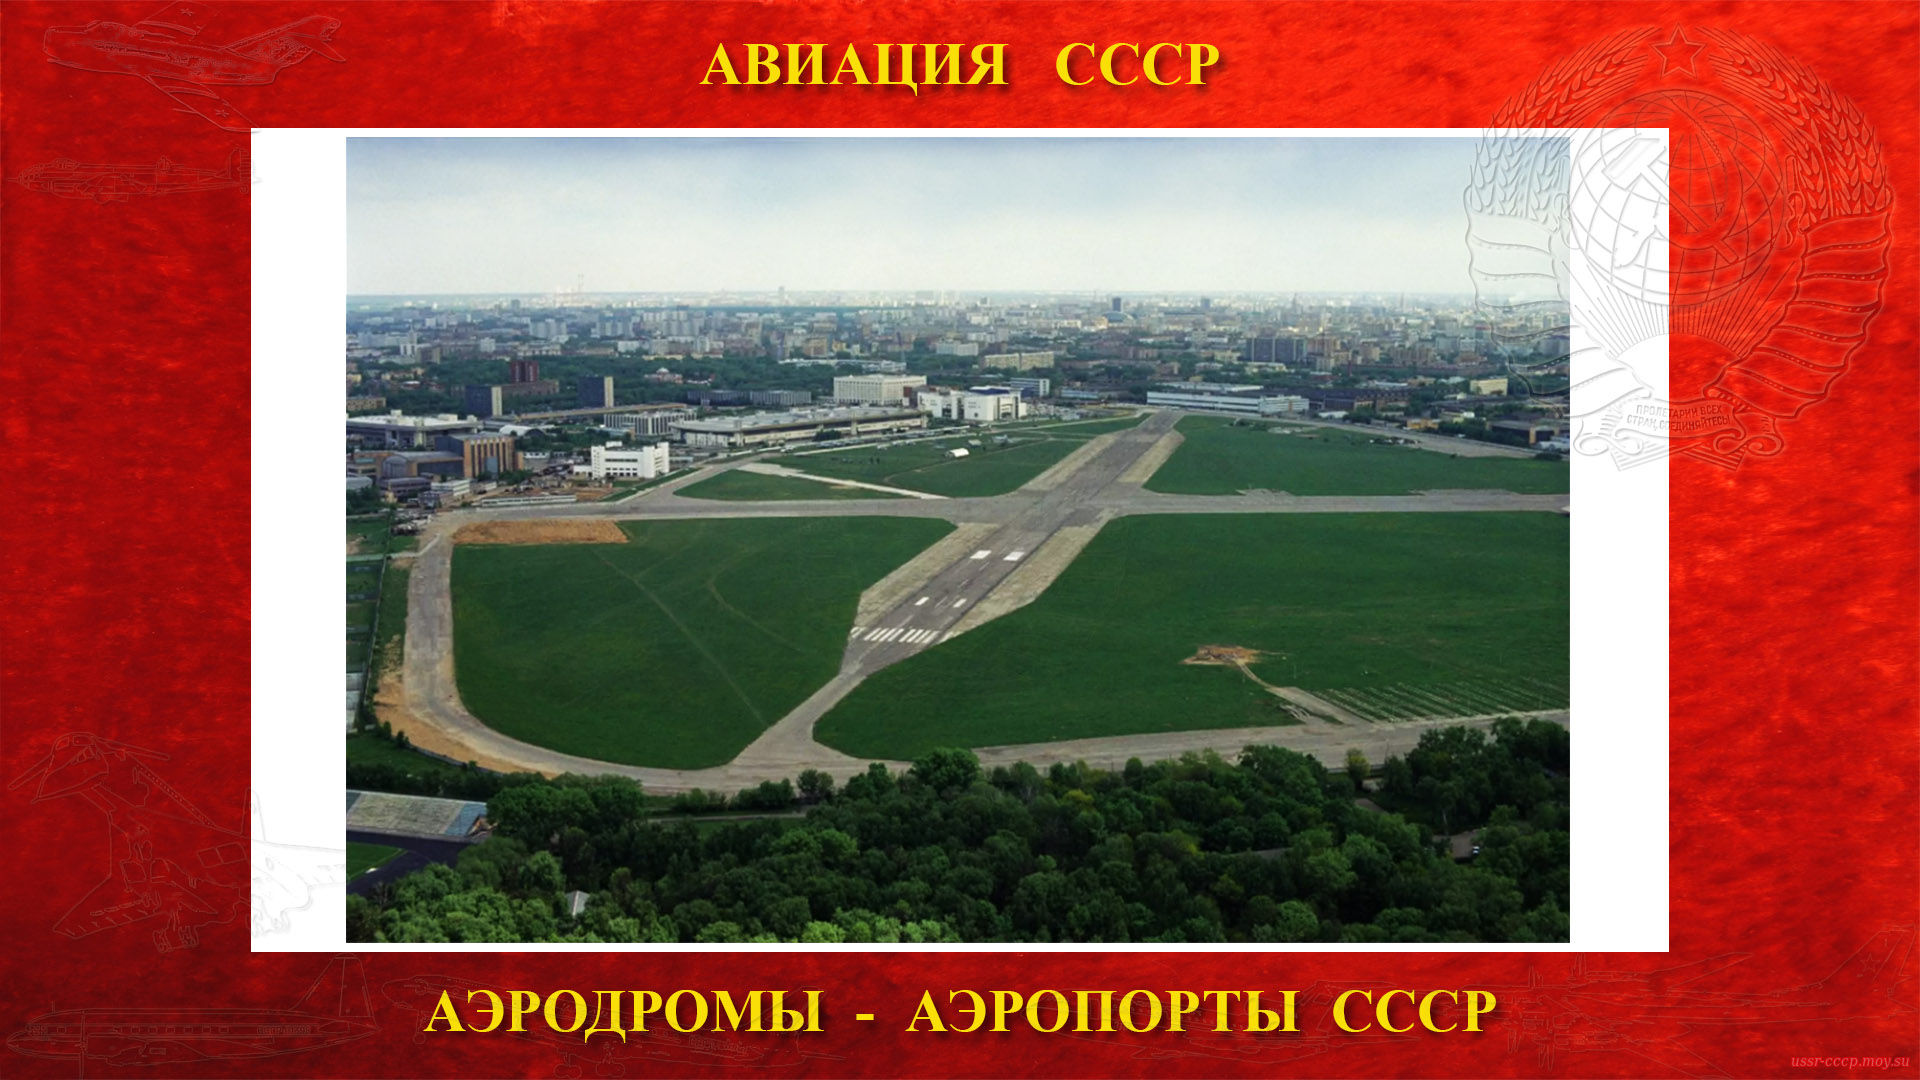 Центральный аэродром имени М. В. Фрунзе (повествование)